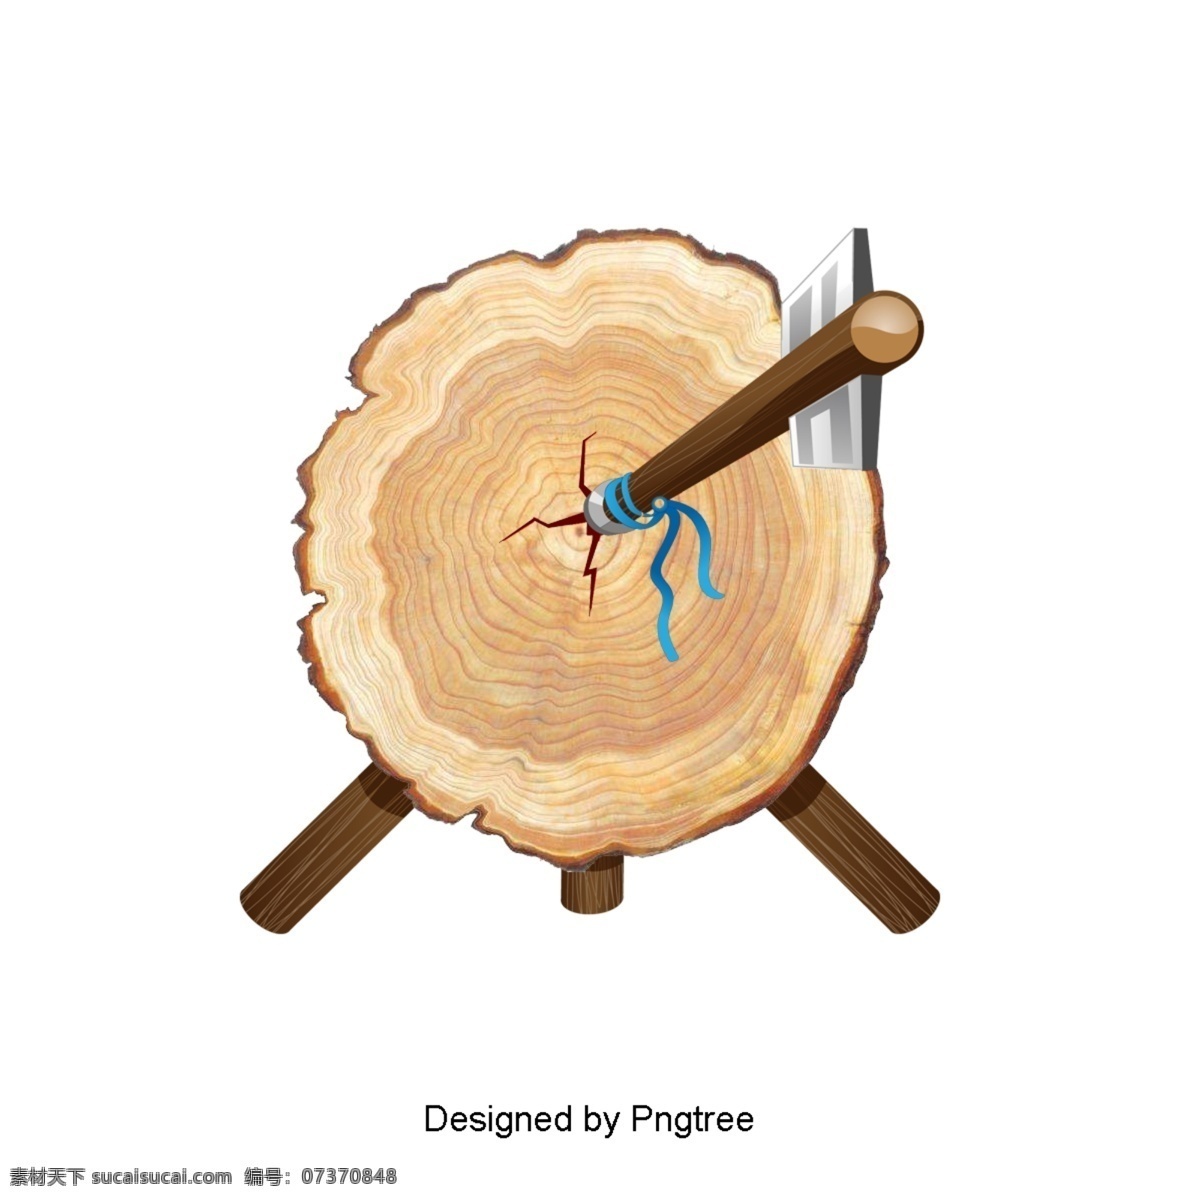 卡通 简单 木 元素 手绘 图案 木材 植物 纹理 图形图像 材料